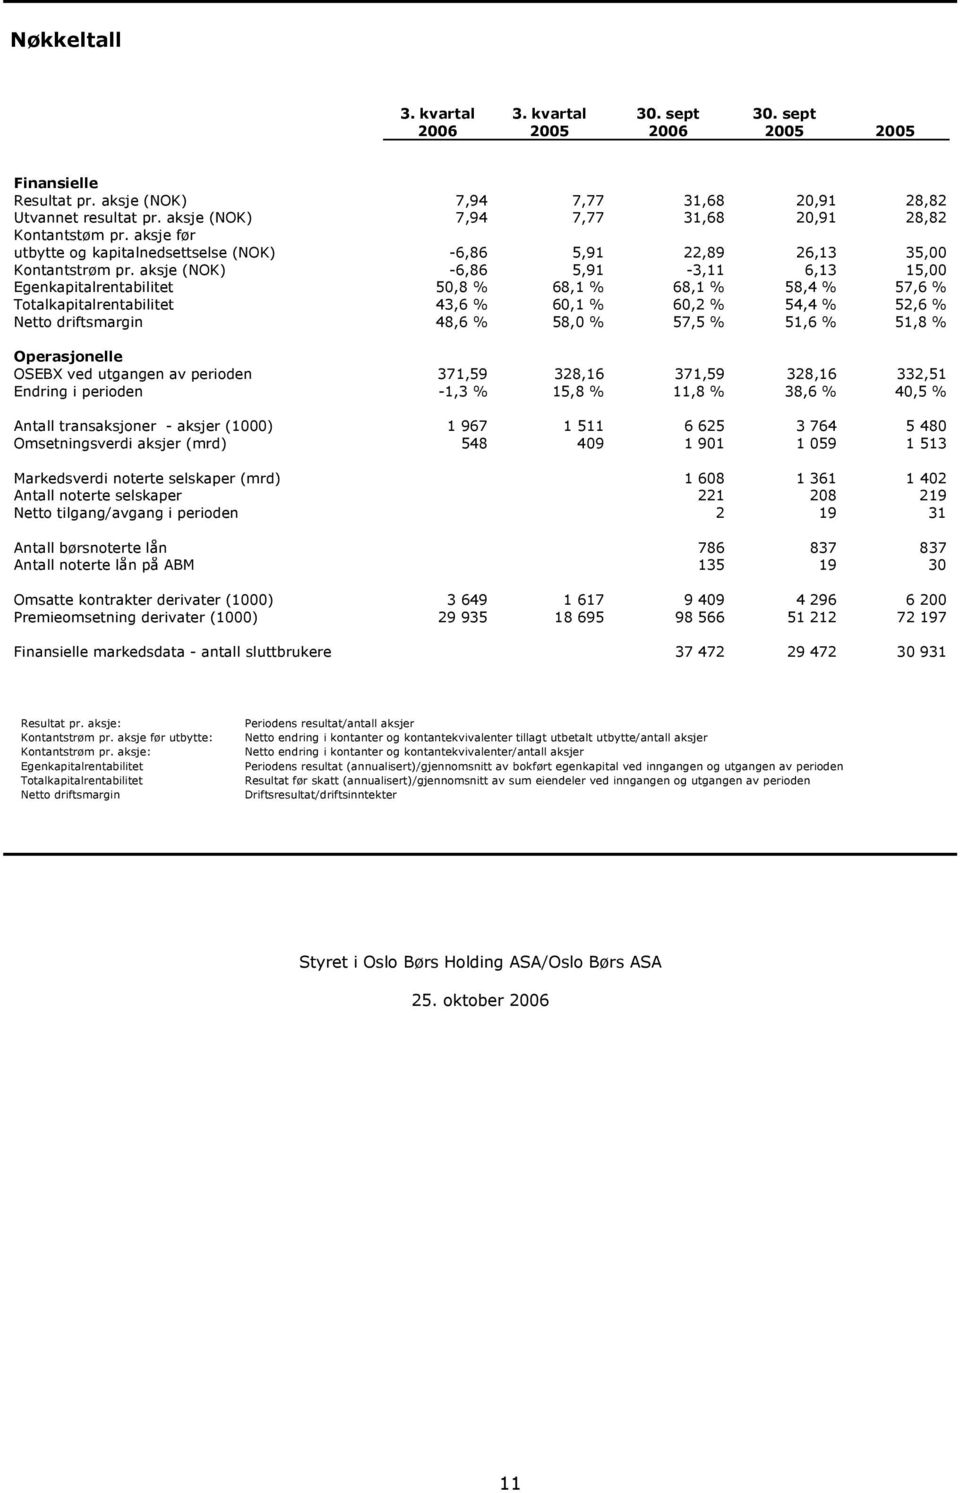 aksje (NOK) -6,86 5,91-3,11 6,13 15,00 Egenkapitalrentabilitet 50,8 % 68,1 % 68,1 % 58,4 % 57,6 % Totalkapitalrentabilitet 43,6 % 60,1 % 60,2 % 54,4 % 52,6 % Netto driftsmargin 48,6 % 58,0 % 57,5 %